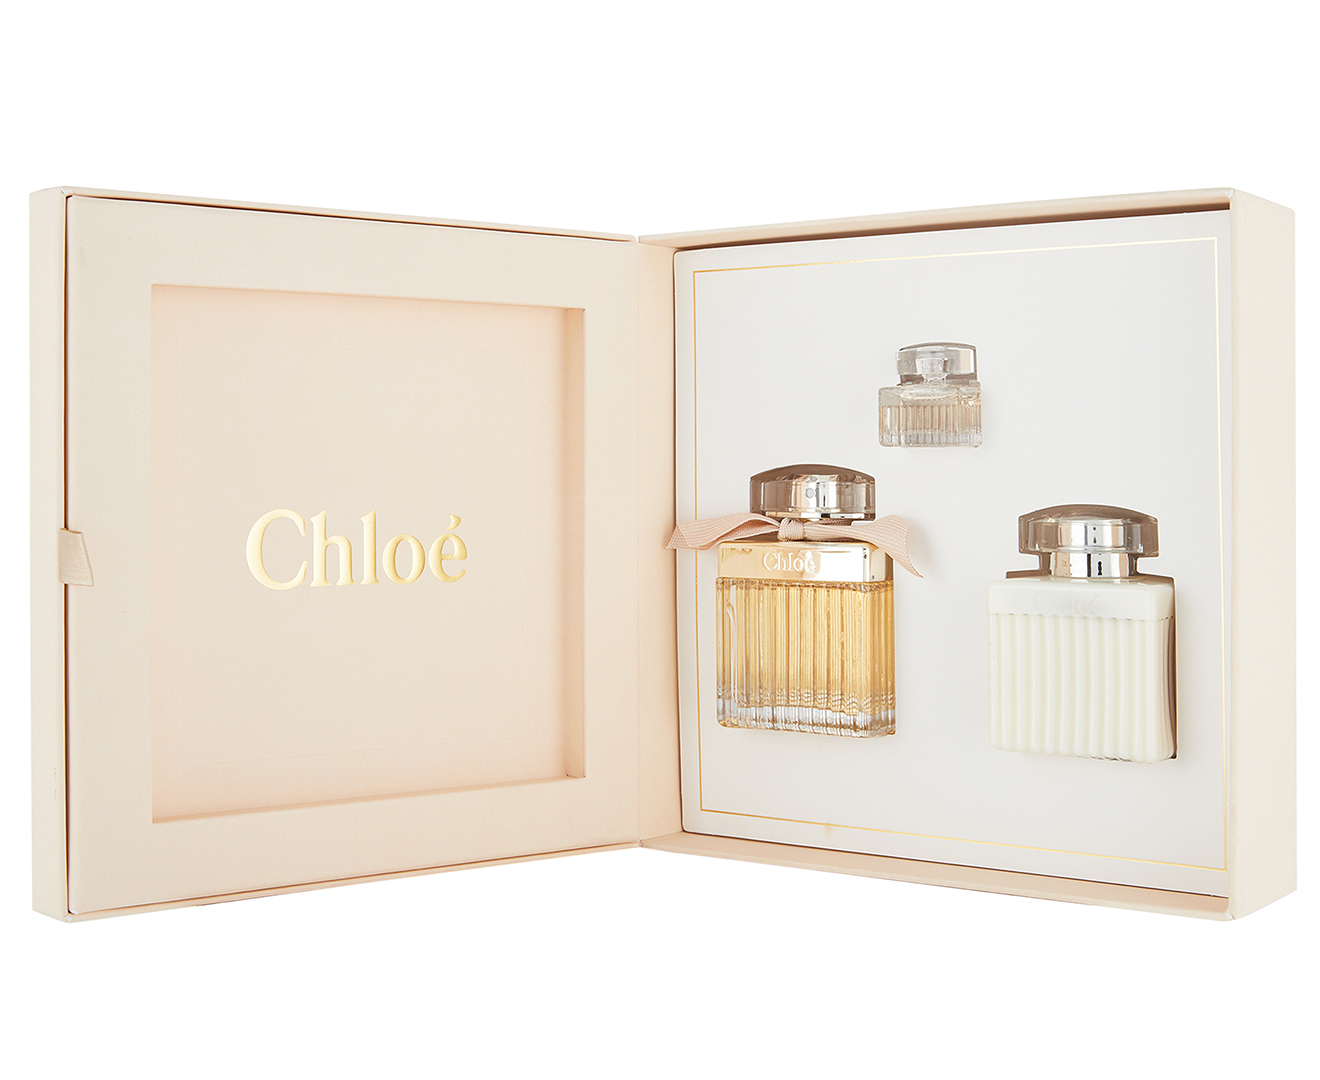 Chloé Signature For Women 3-Piece Perfume Gift Set | Catch.com.au